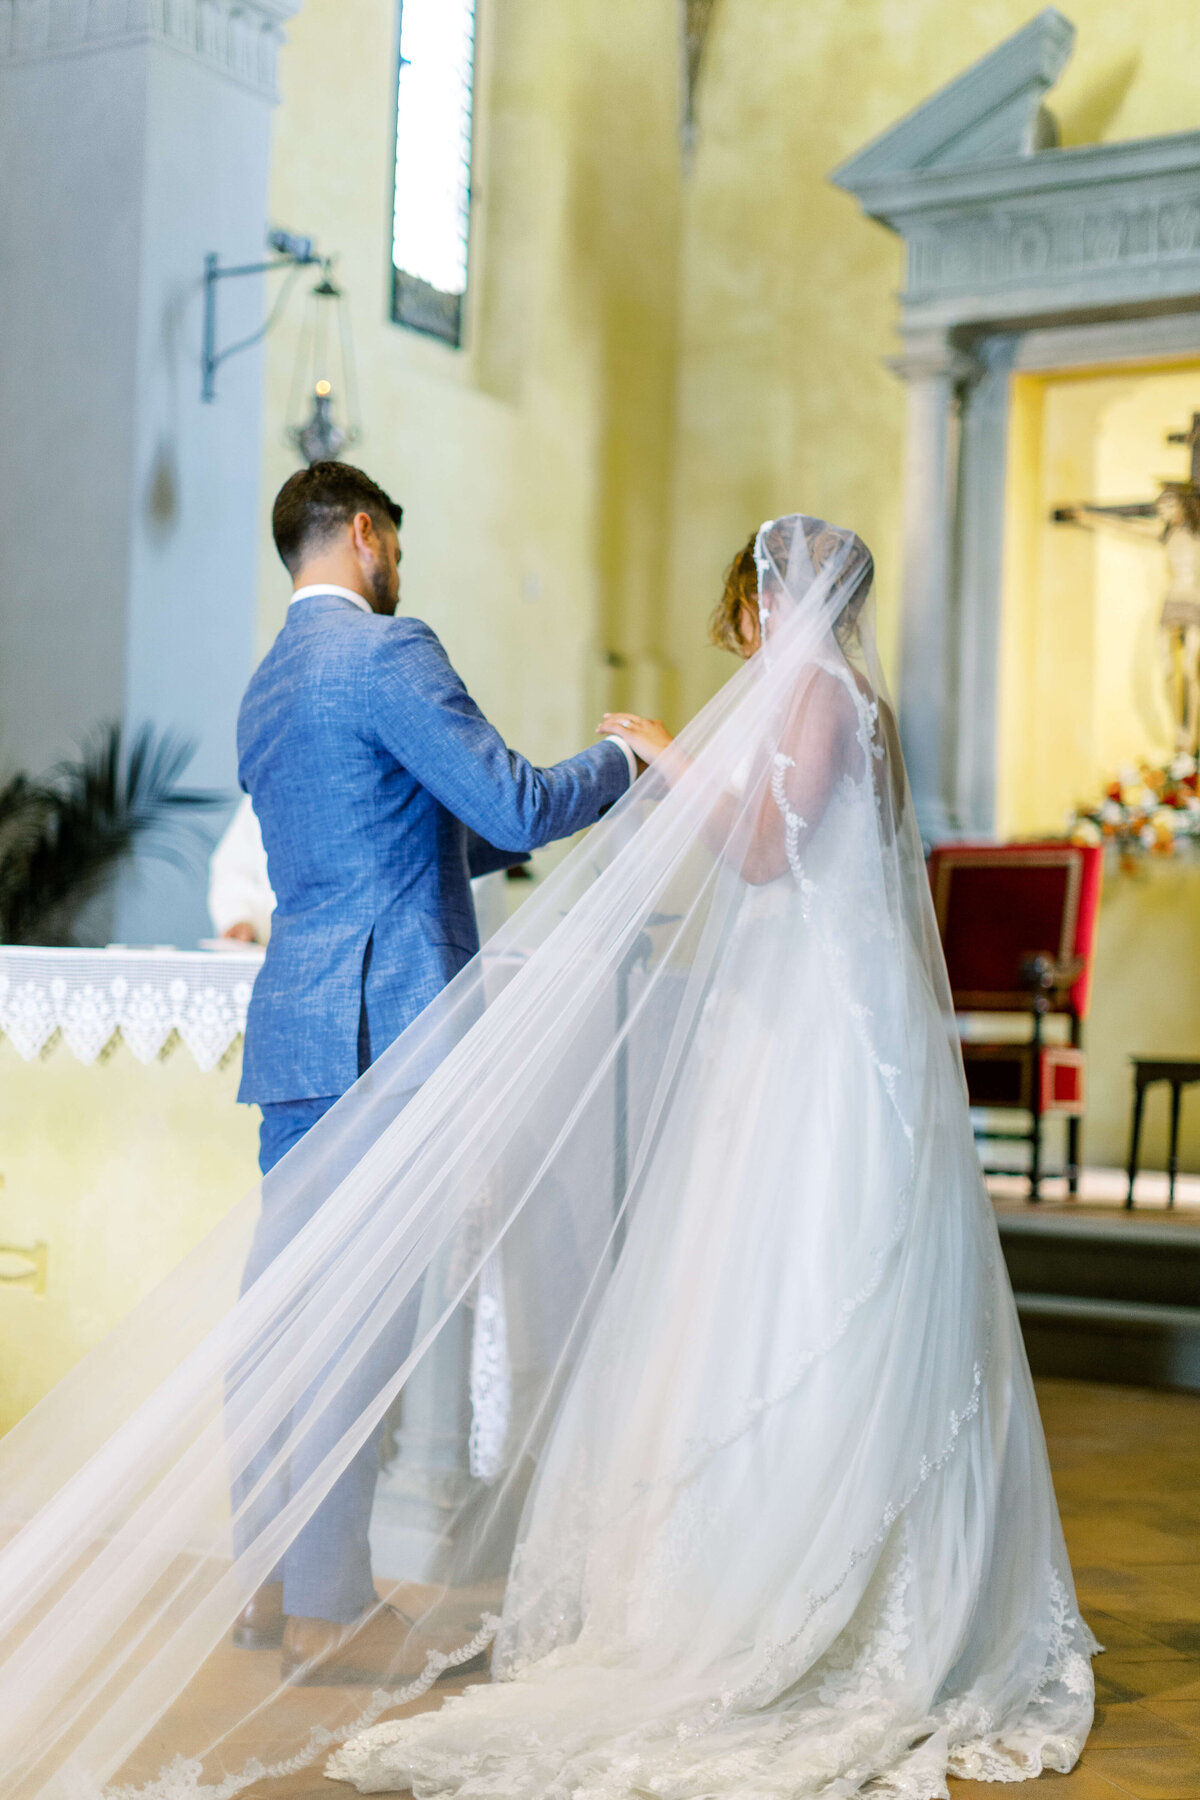 Wedding E&T - Tuscany - Italy 2019 16